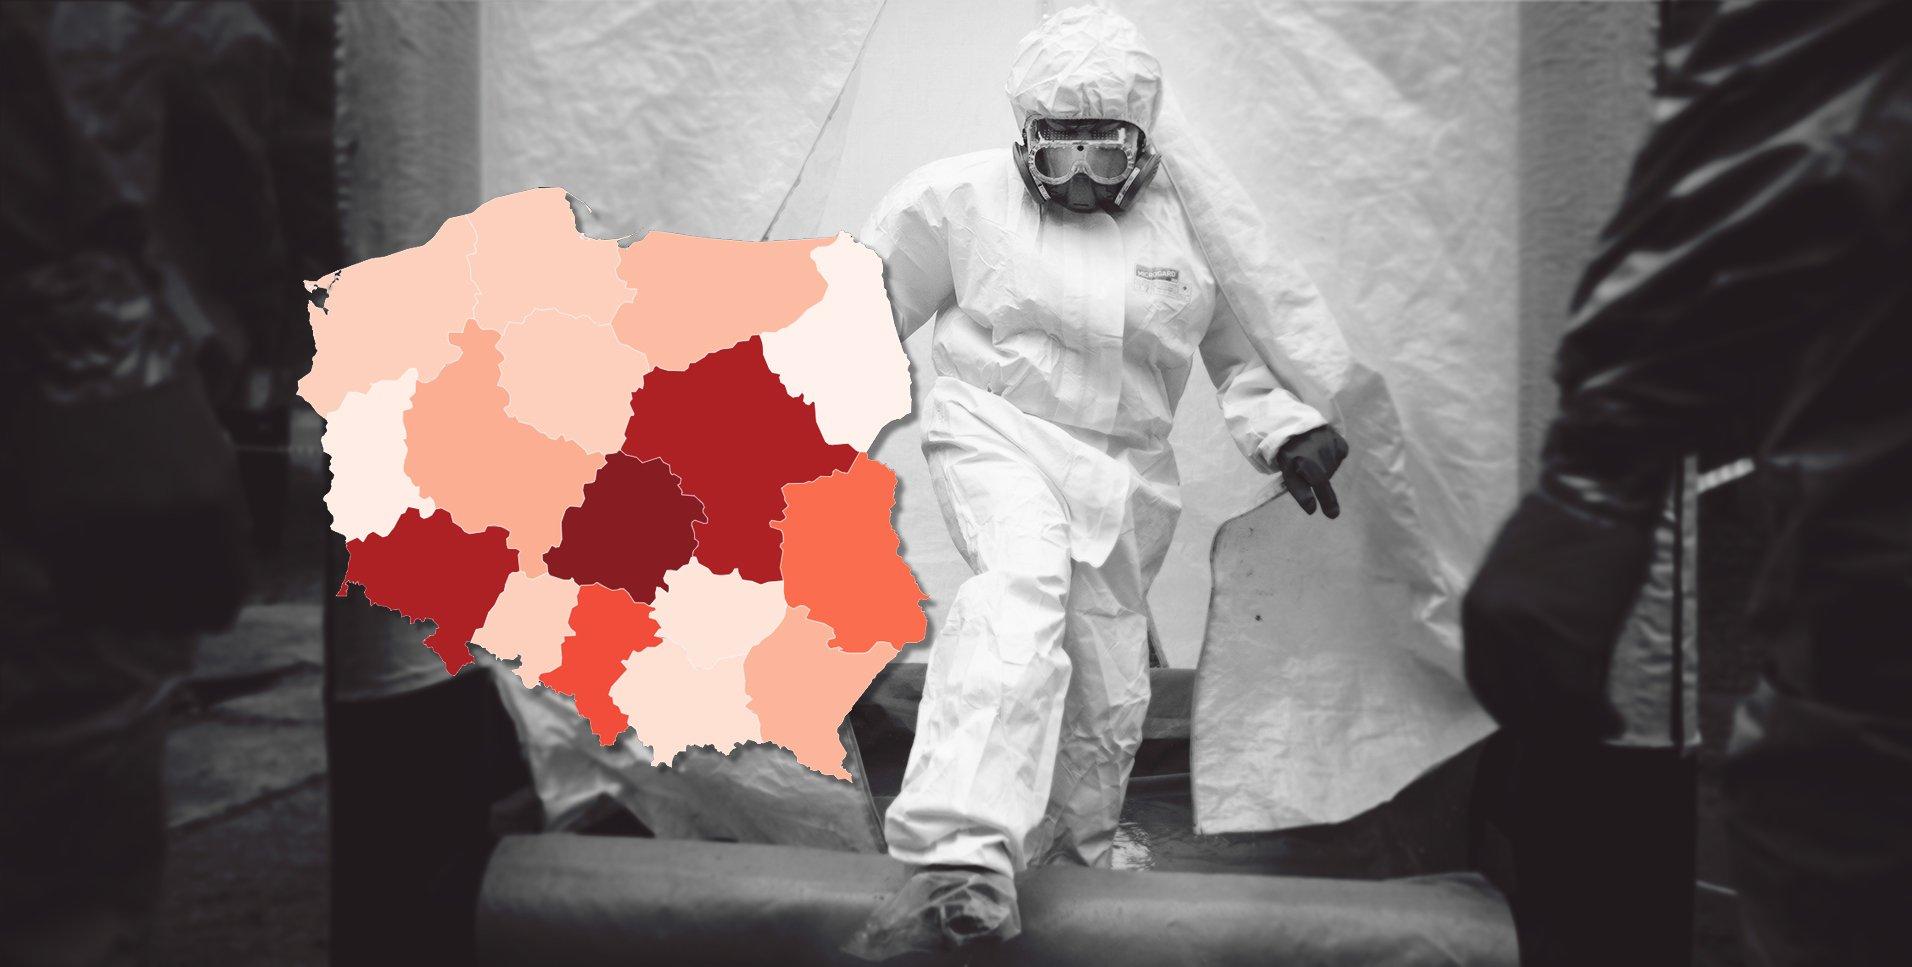 pandemia koronawirusa w Polsce